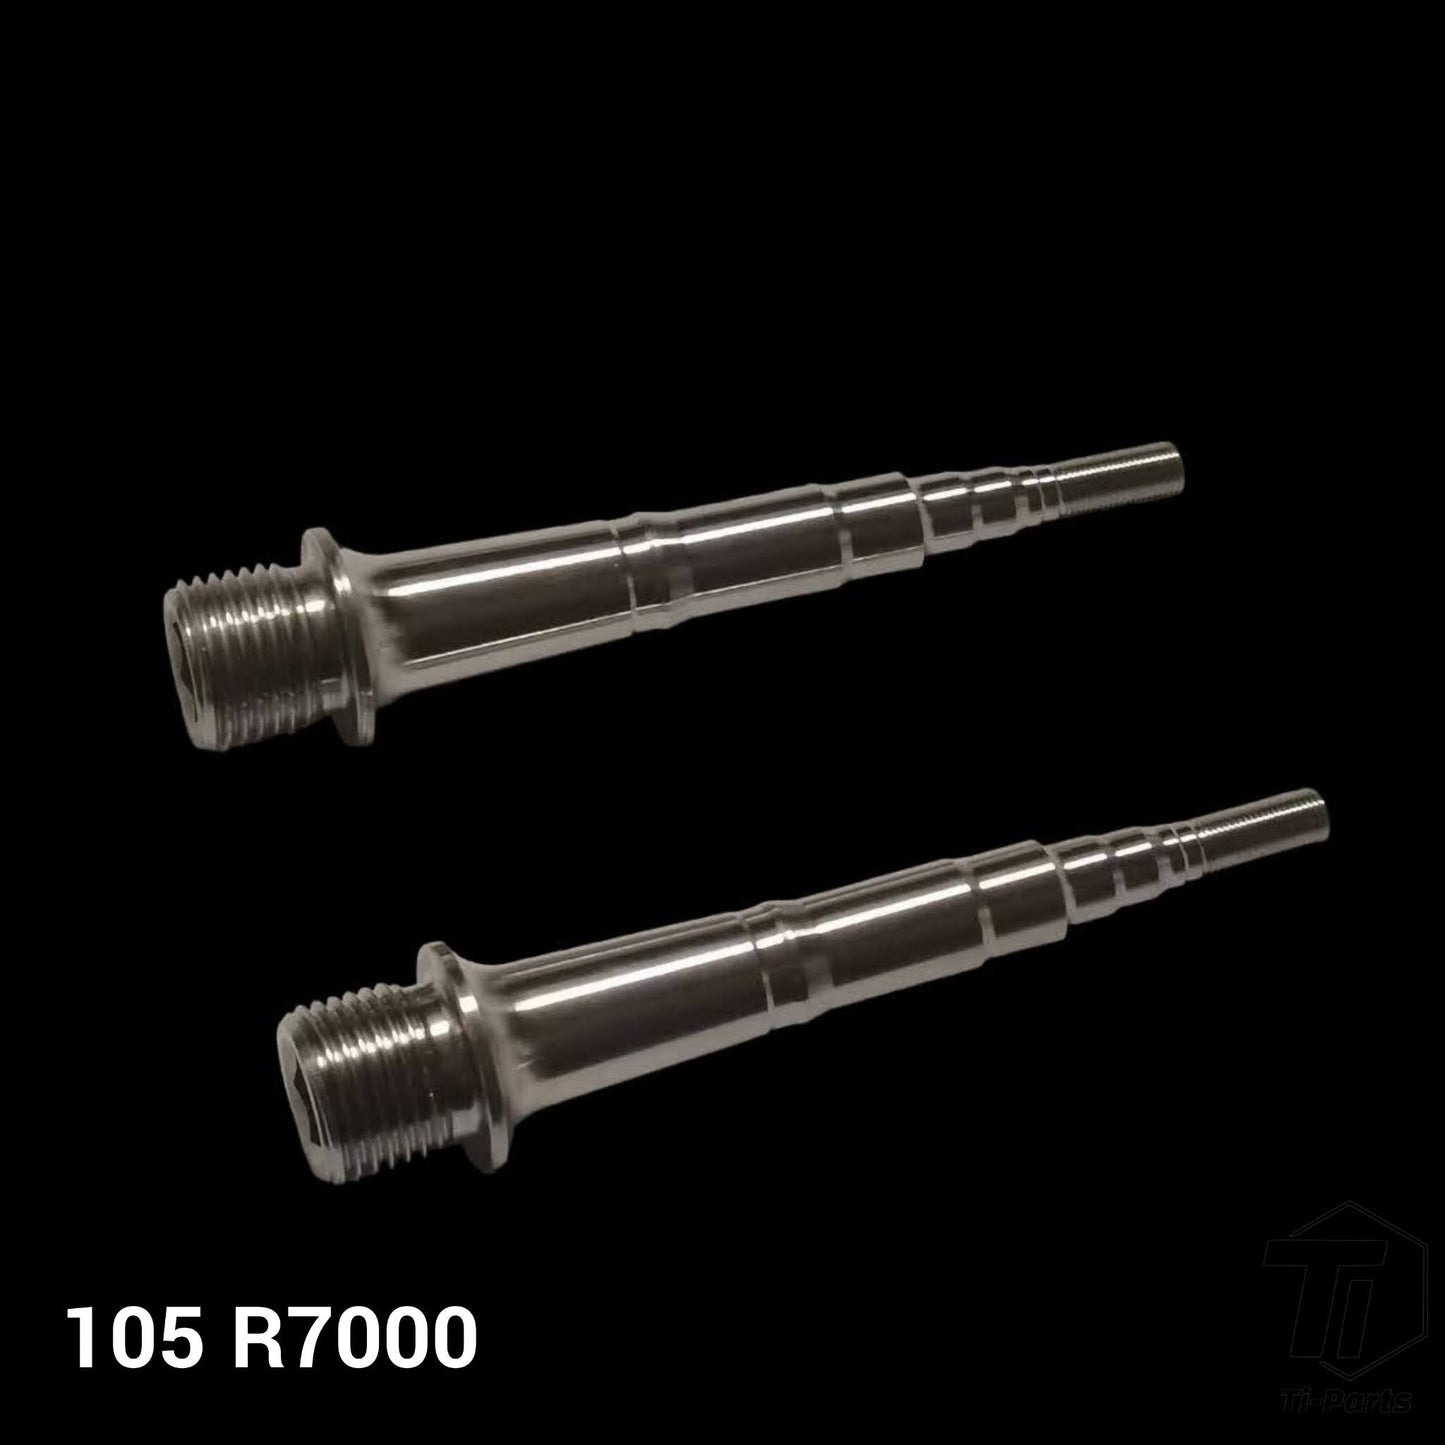 Titanium Pedal Axle for Shimano | +4mm M9120 M9020 M9000 M8000 XT XTR Ultegra Dura Ace 9000 6800 R8000 R9100 M975 M980 M990